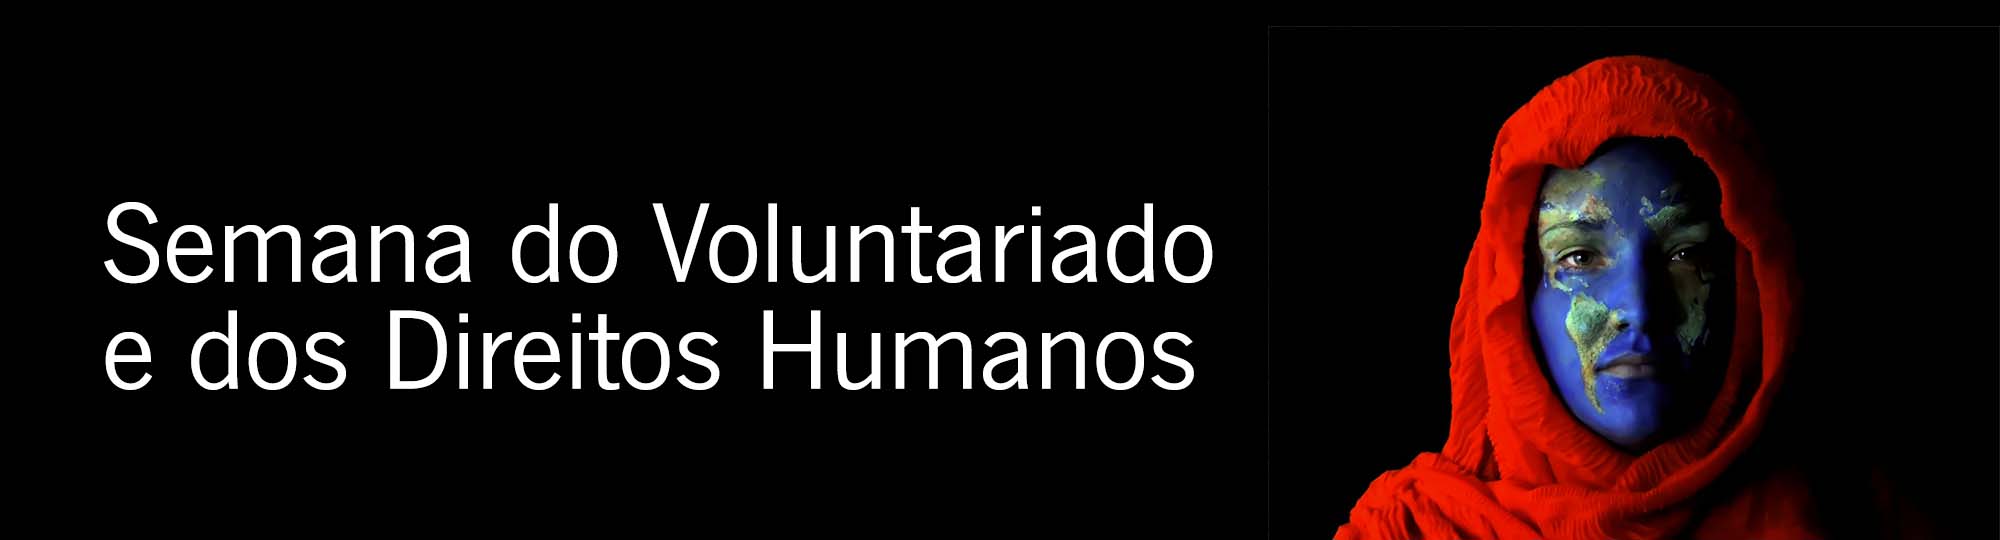 Semana do Voluntariado e dos Direitos Humanos
